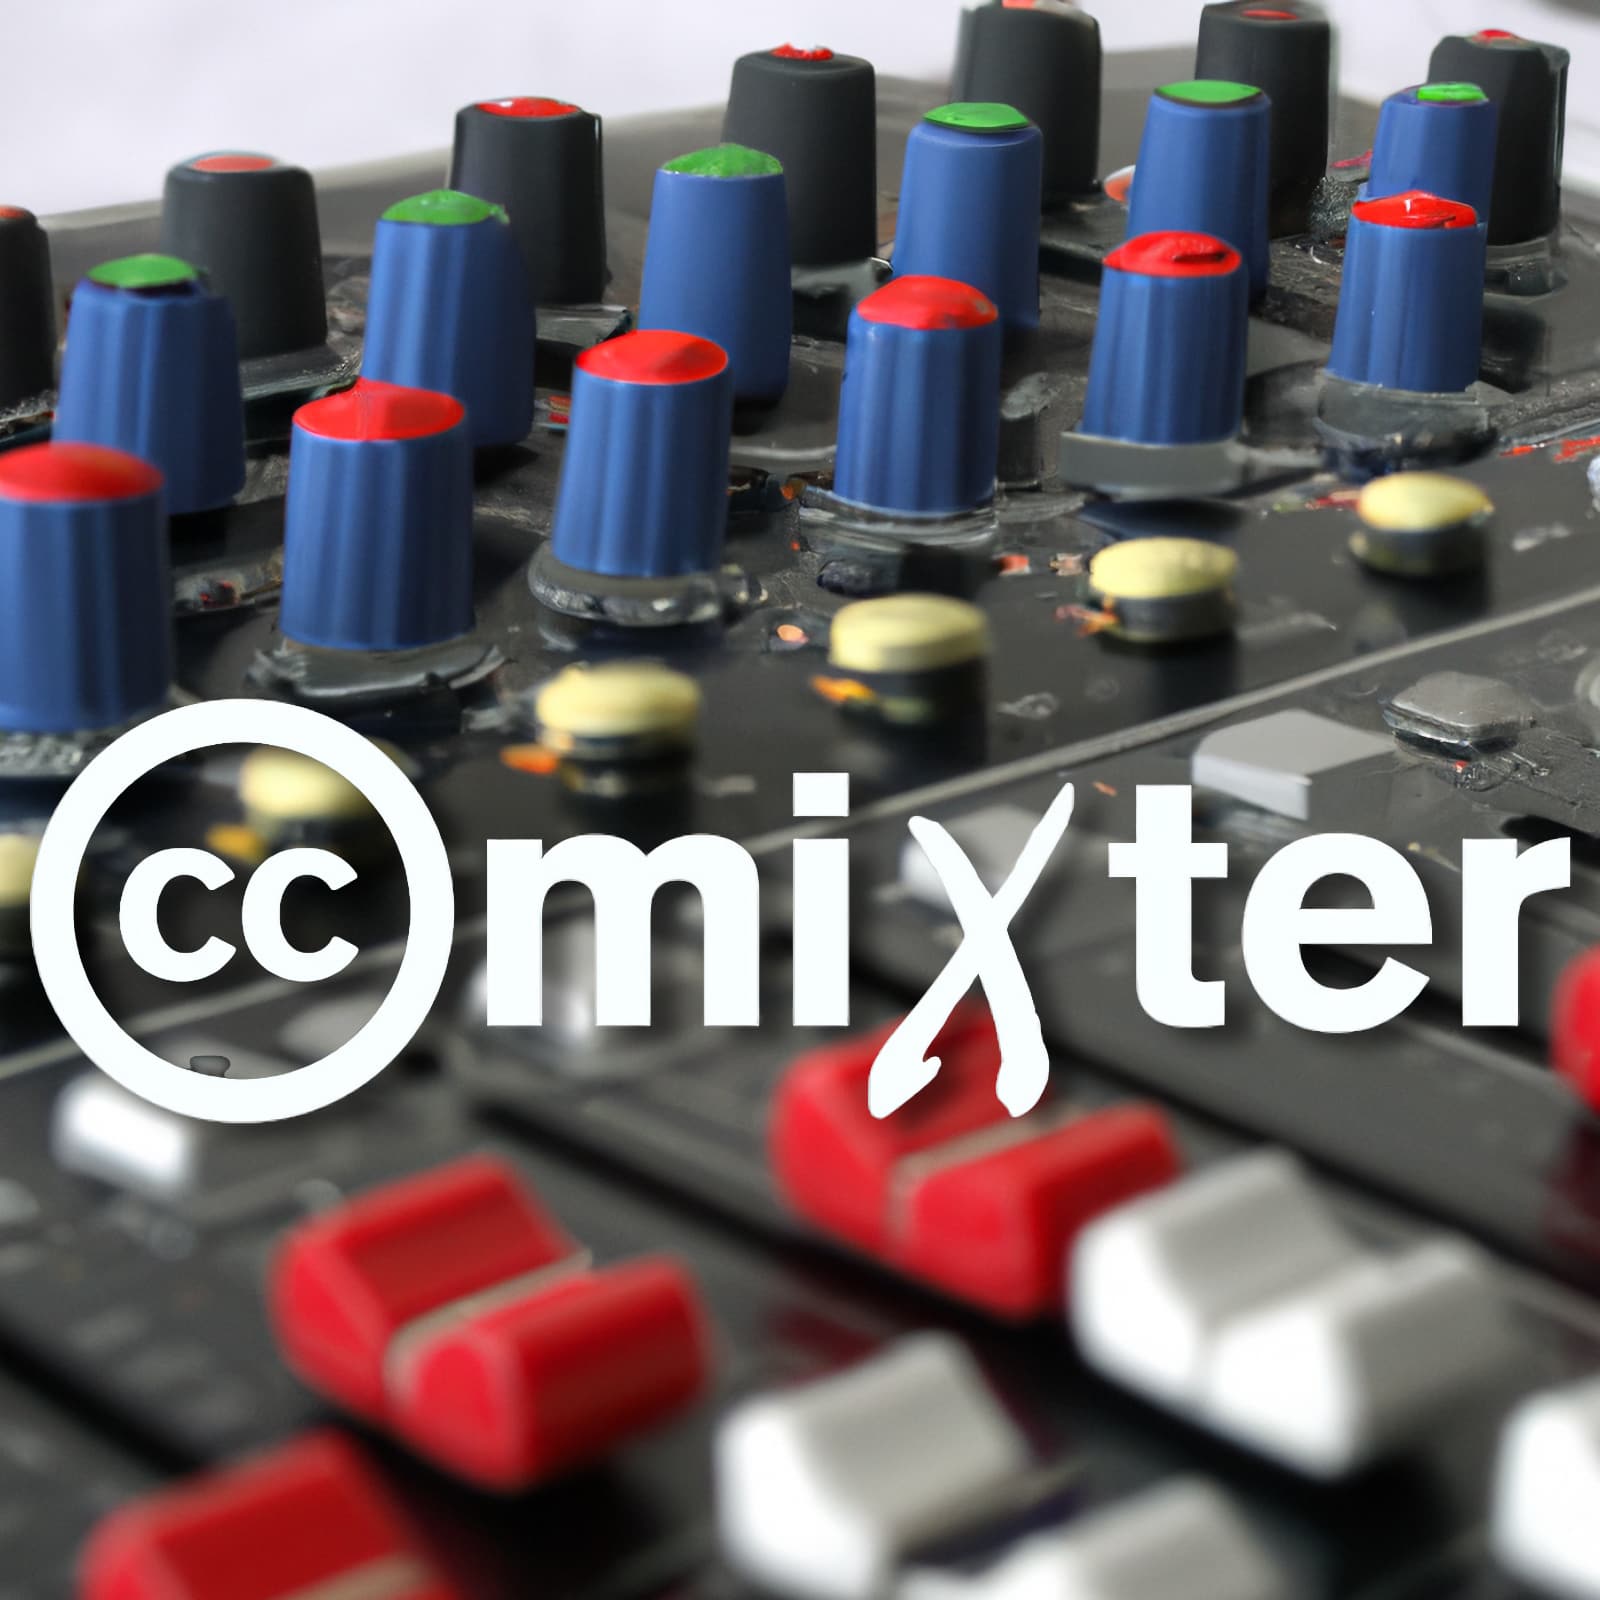 CC Mixter mixer with logo legal remixing